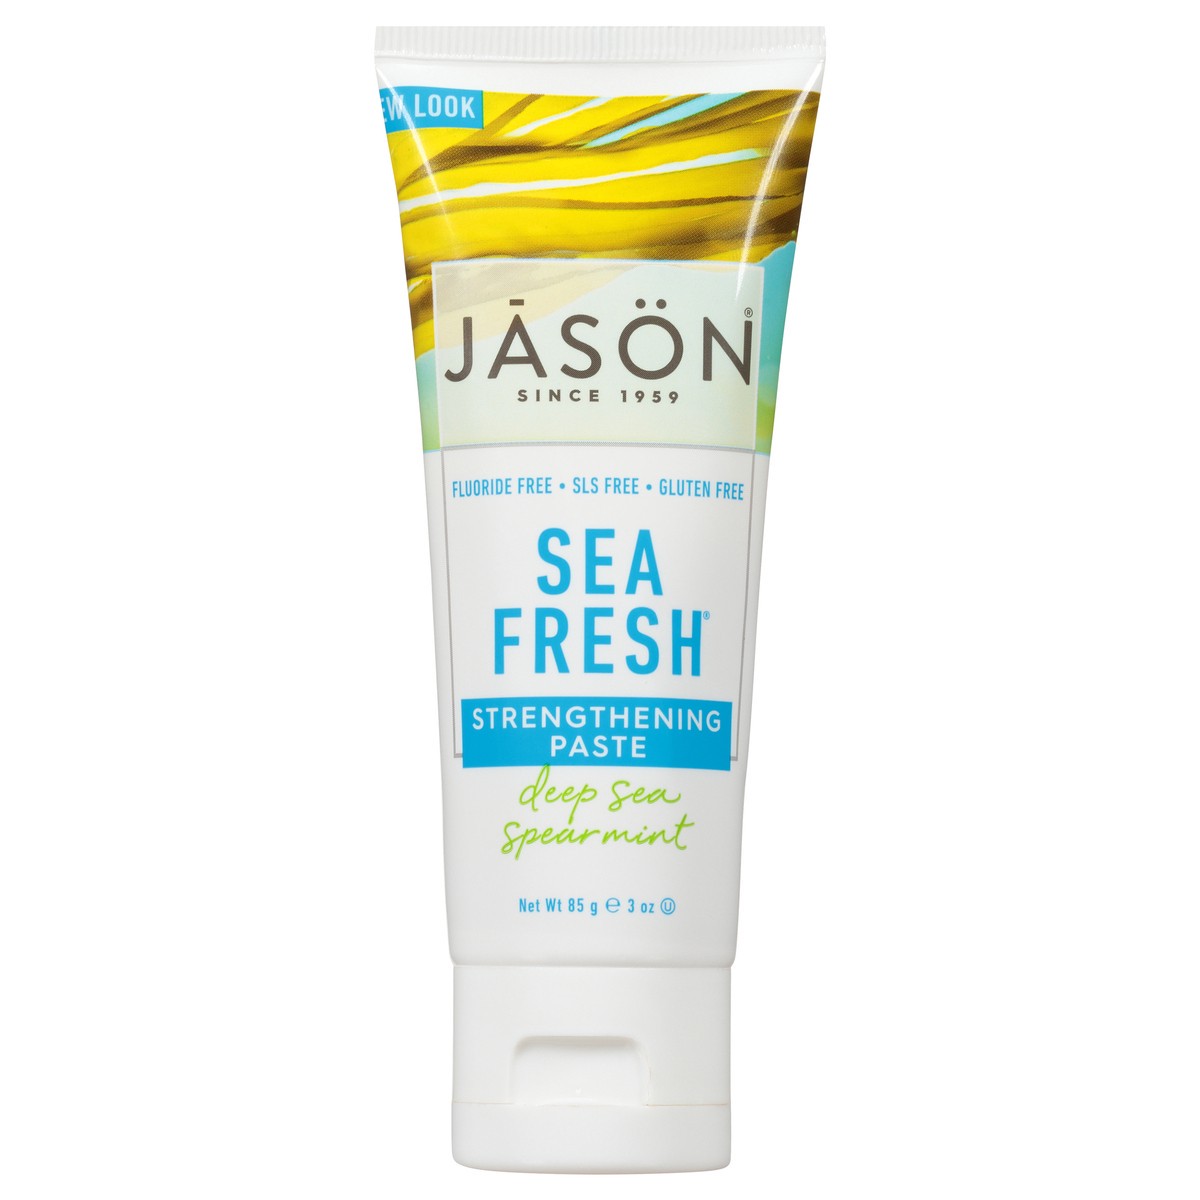 slide 4 of 8, JASON Sea Fresh Deep Sea Spearmint Strengthening Paste 3 oz. Tube, 3 oz